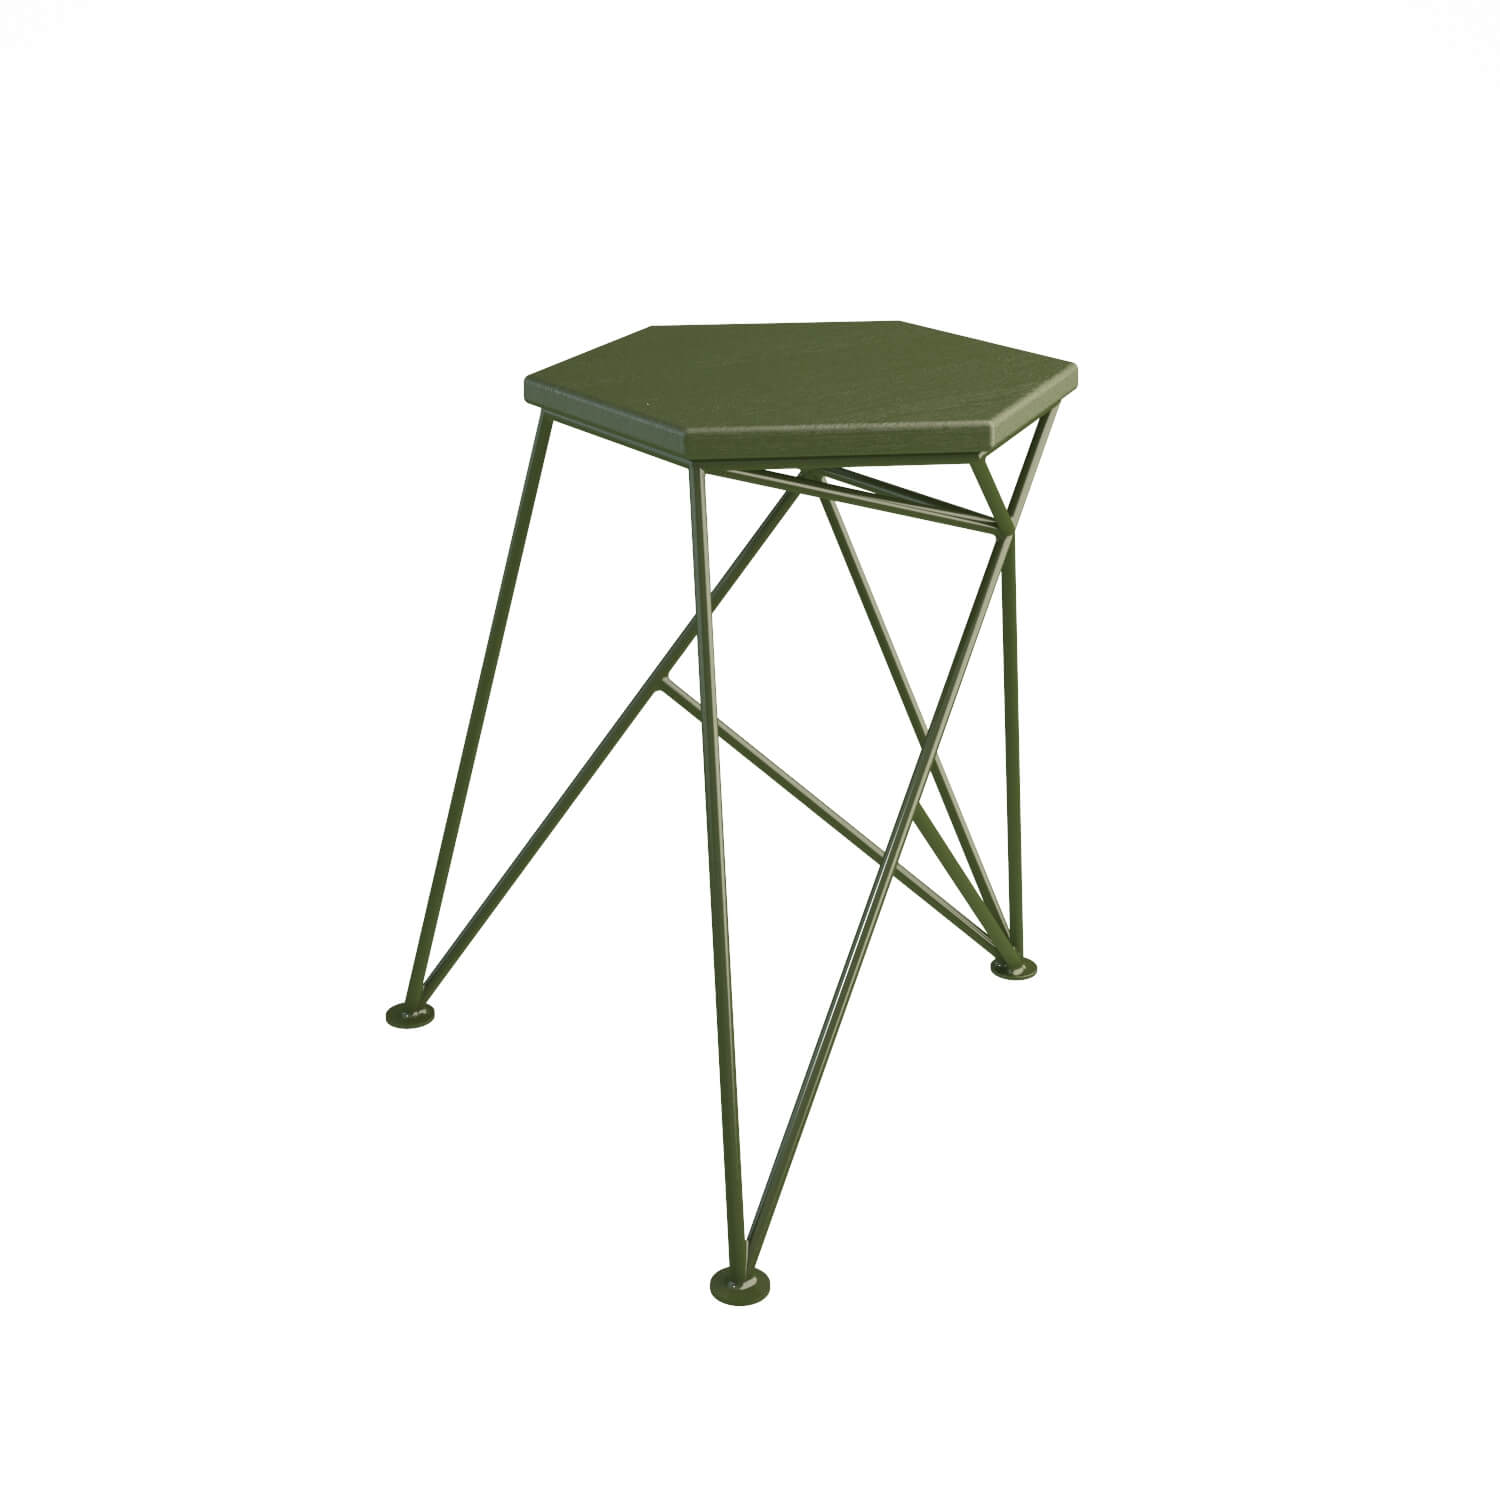 Spike stool